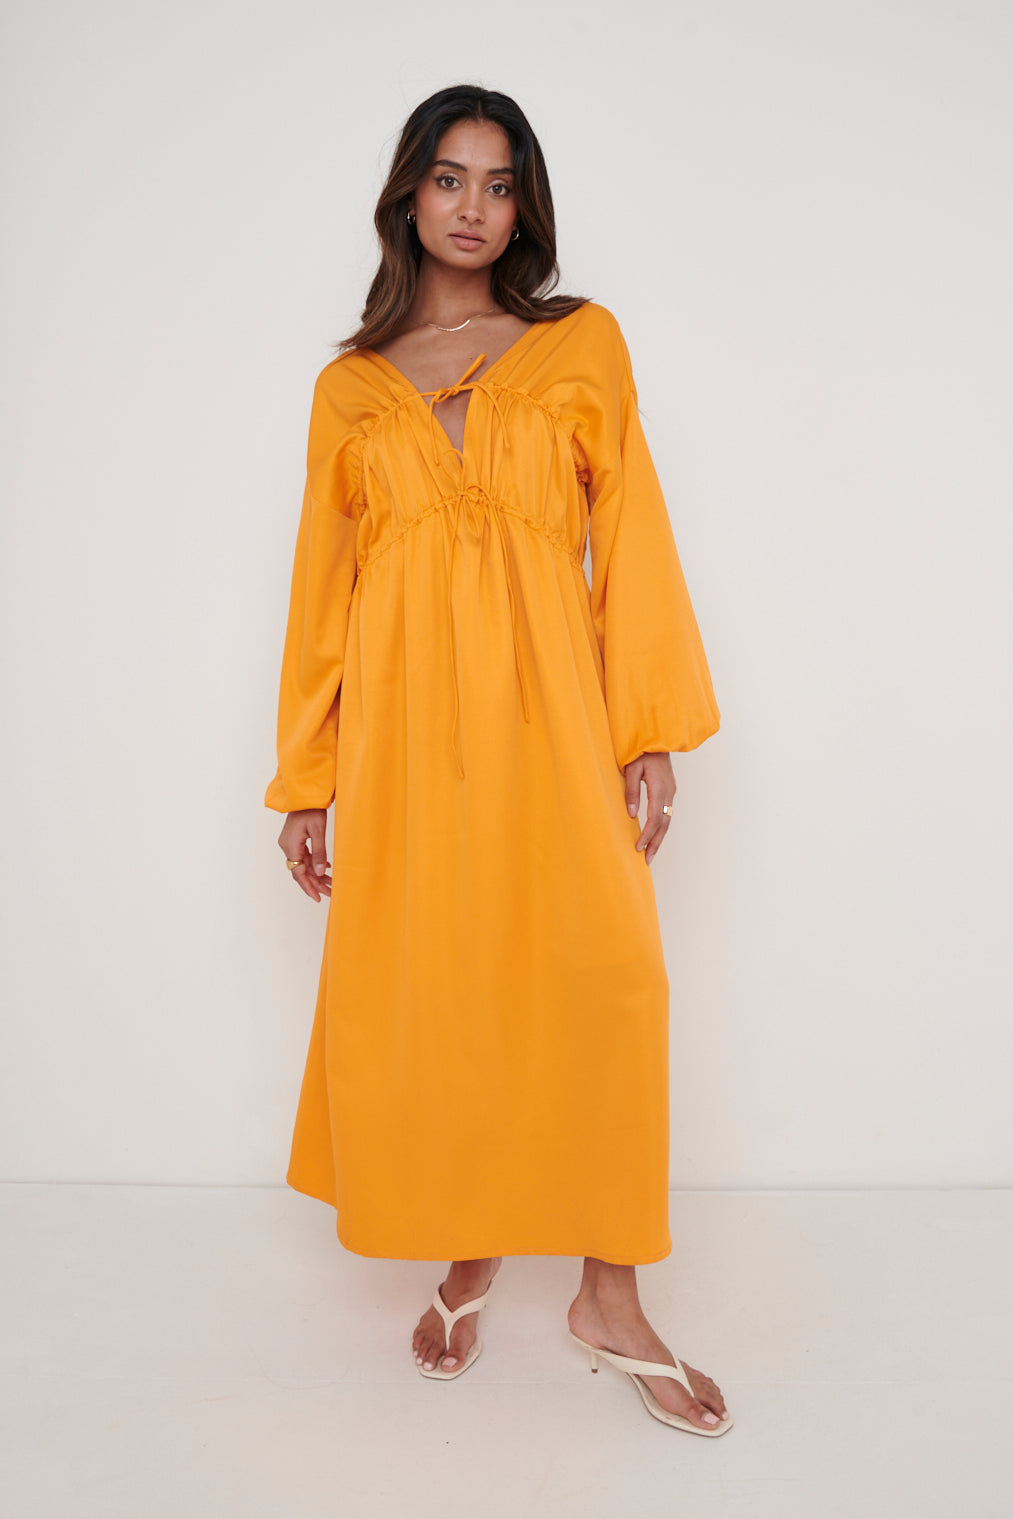 Ottilie Tie Midaxi Dress - Tangerine, 14